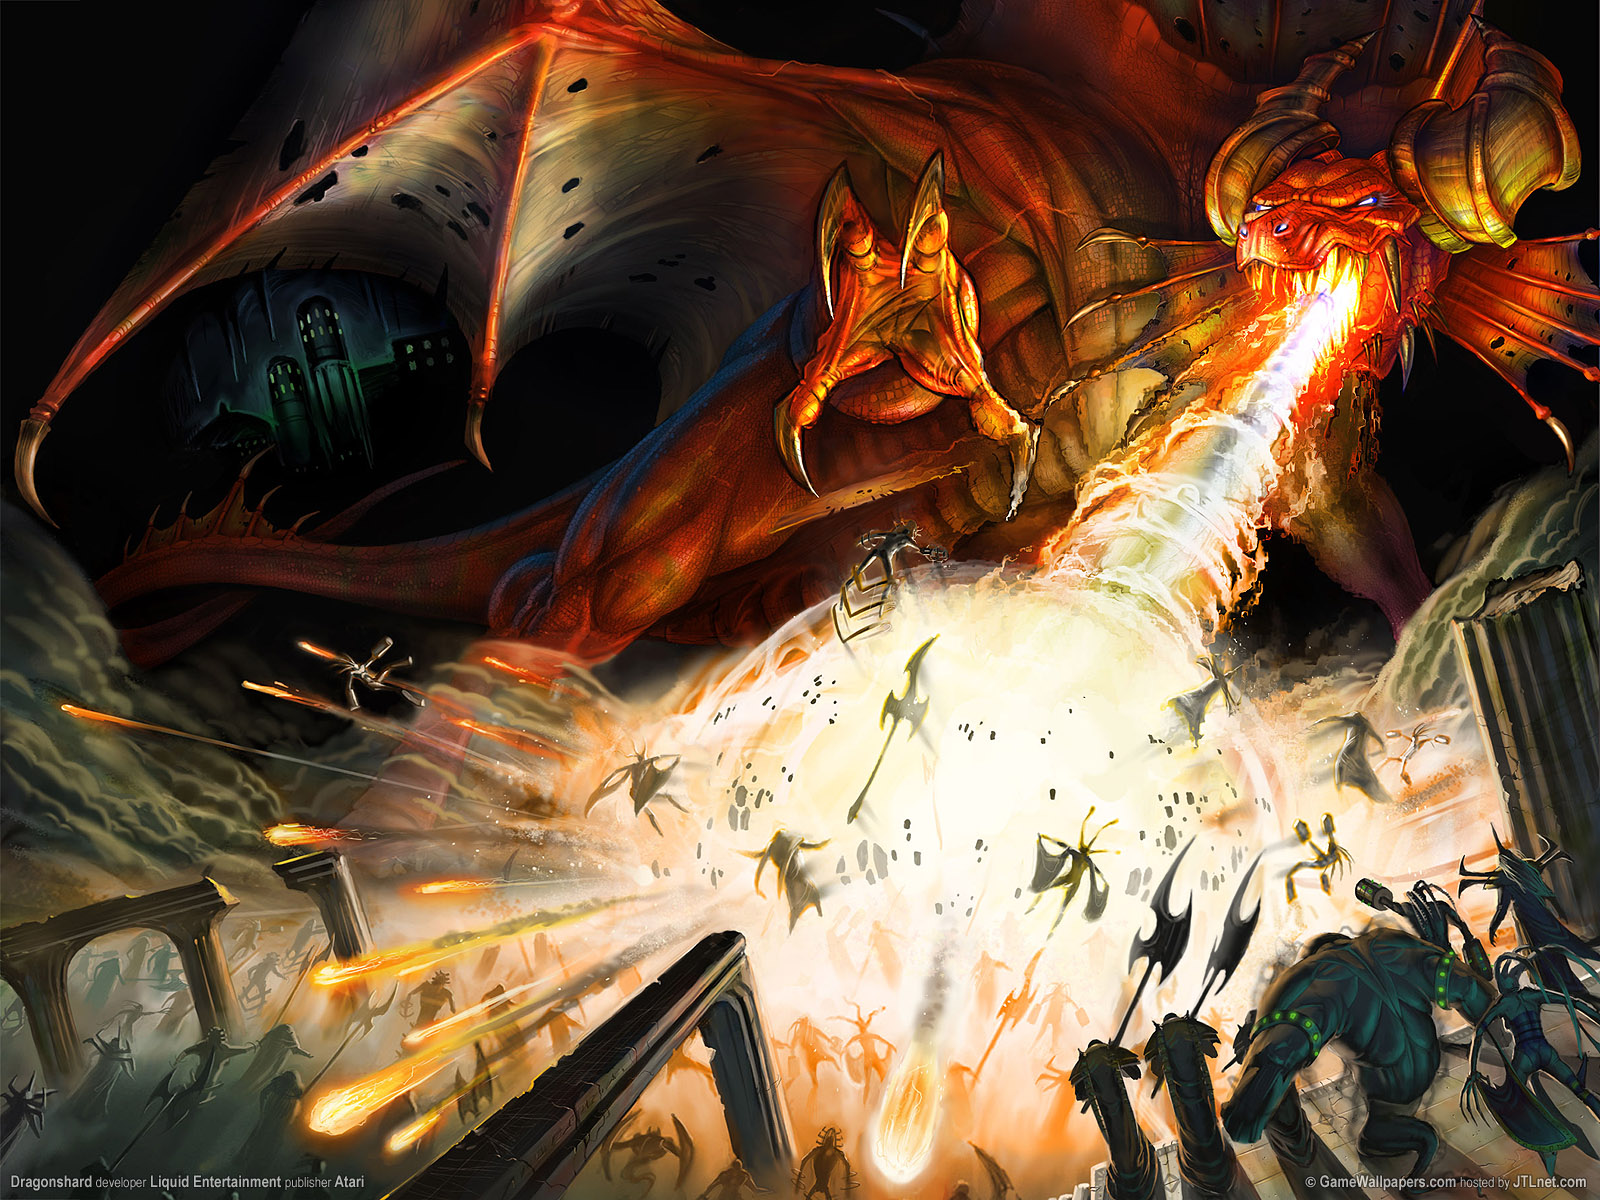 Melhores papéis de parede de Dungeons & Dragons: Dragonshard para tela do telefone